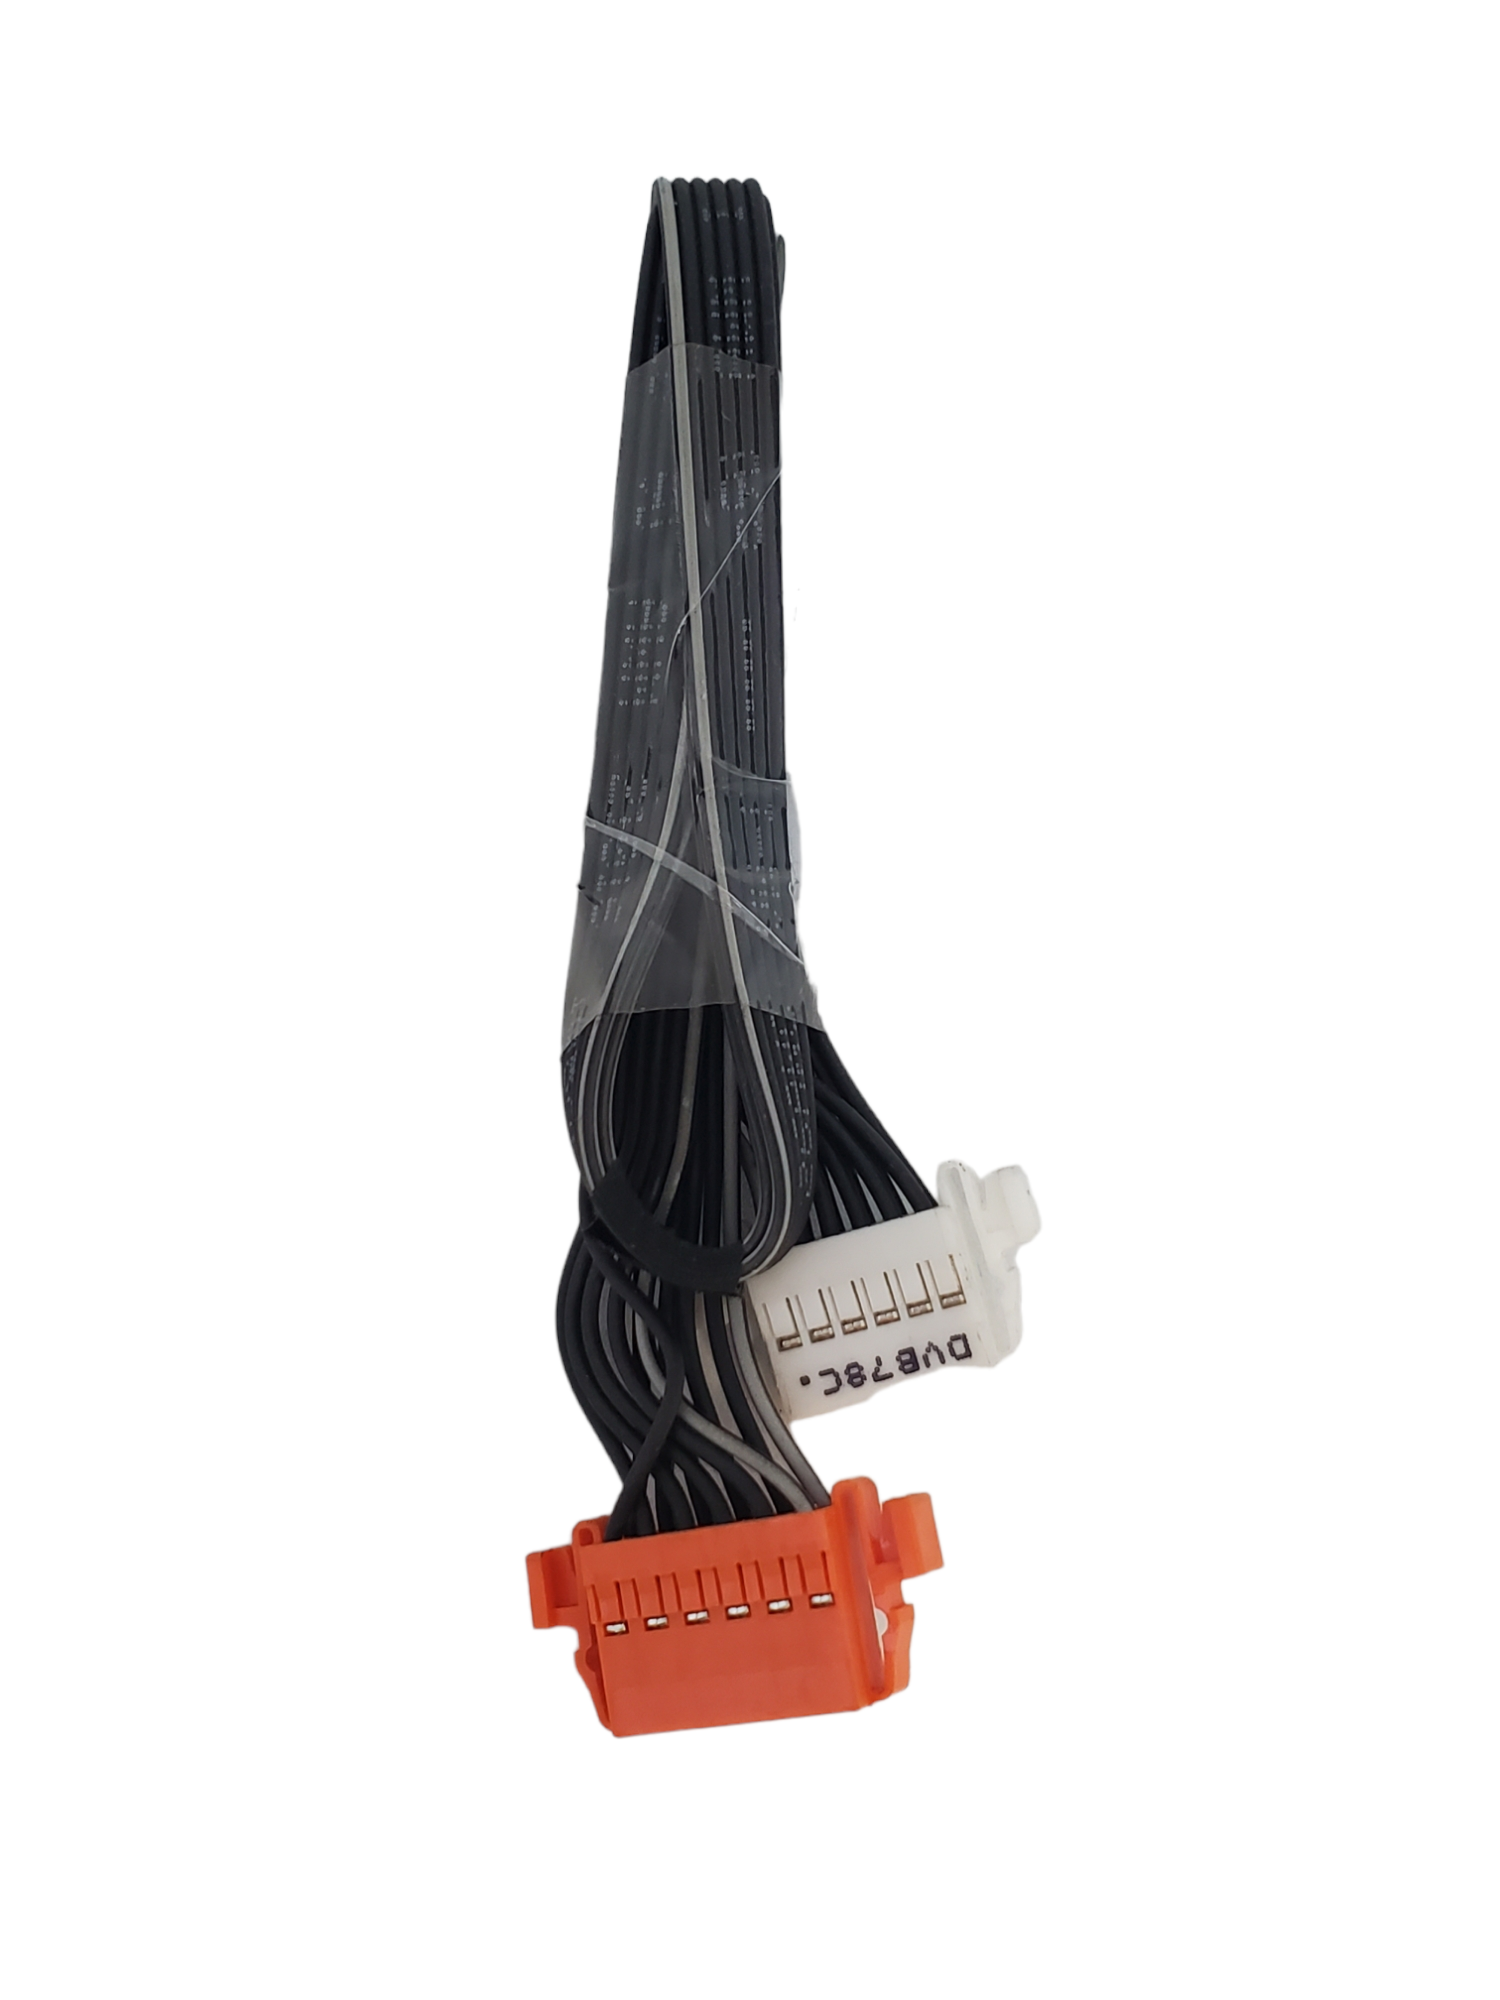 kit flexores, cables de corriente Samsung UN49MU600F